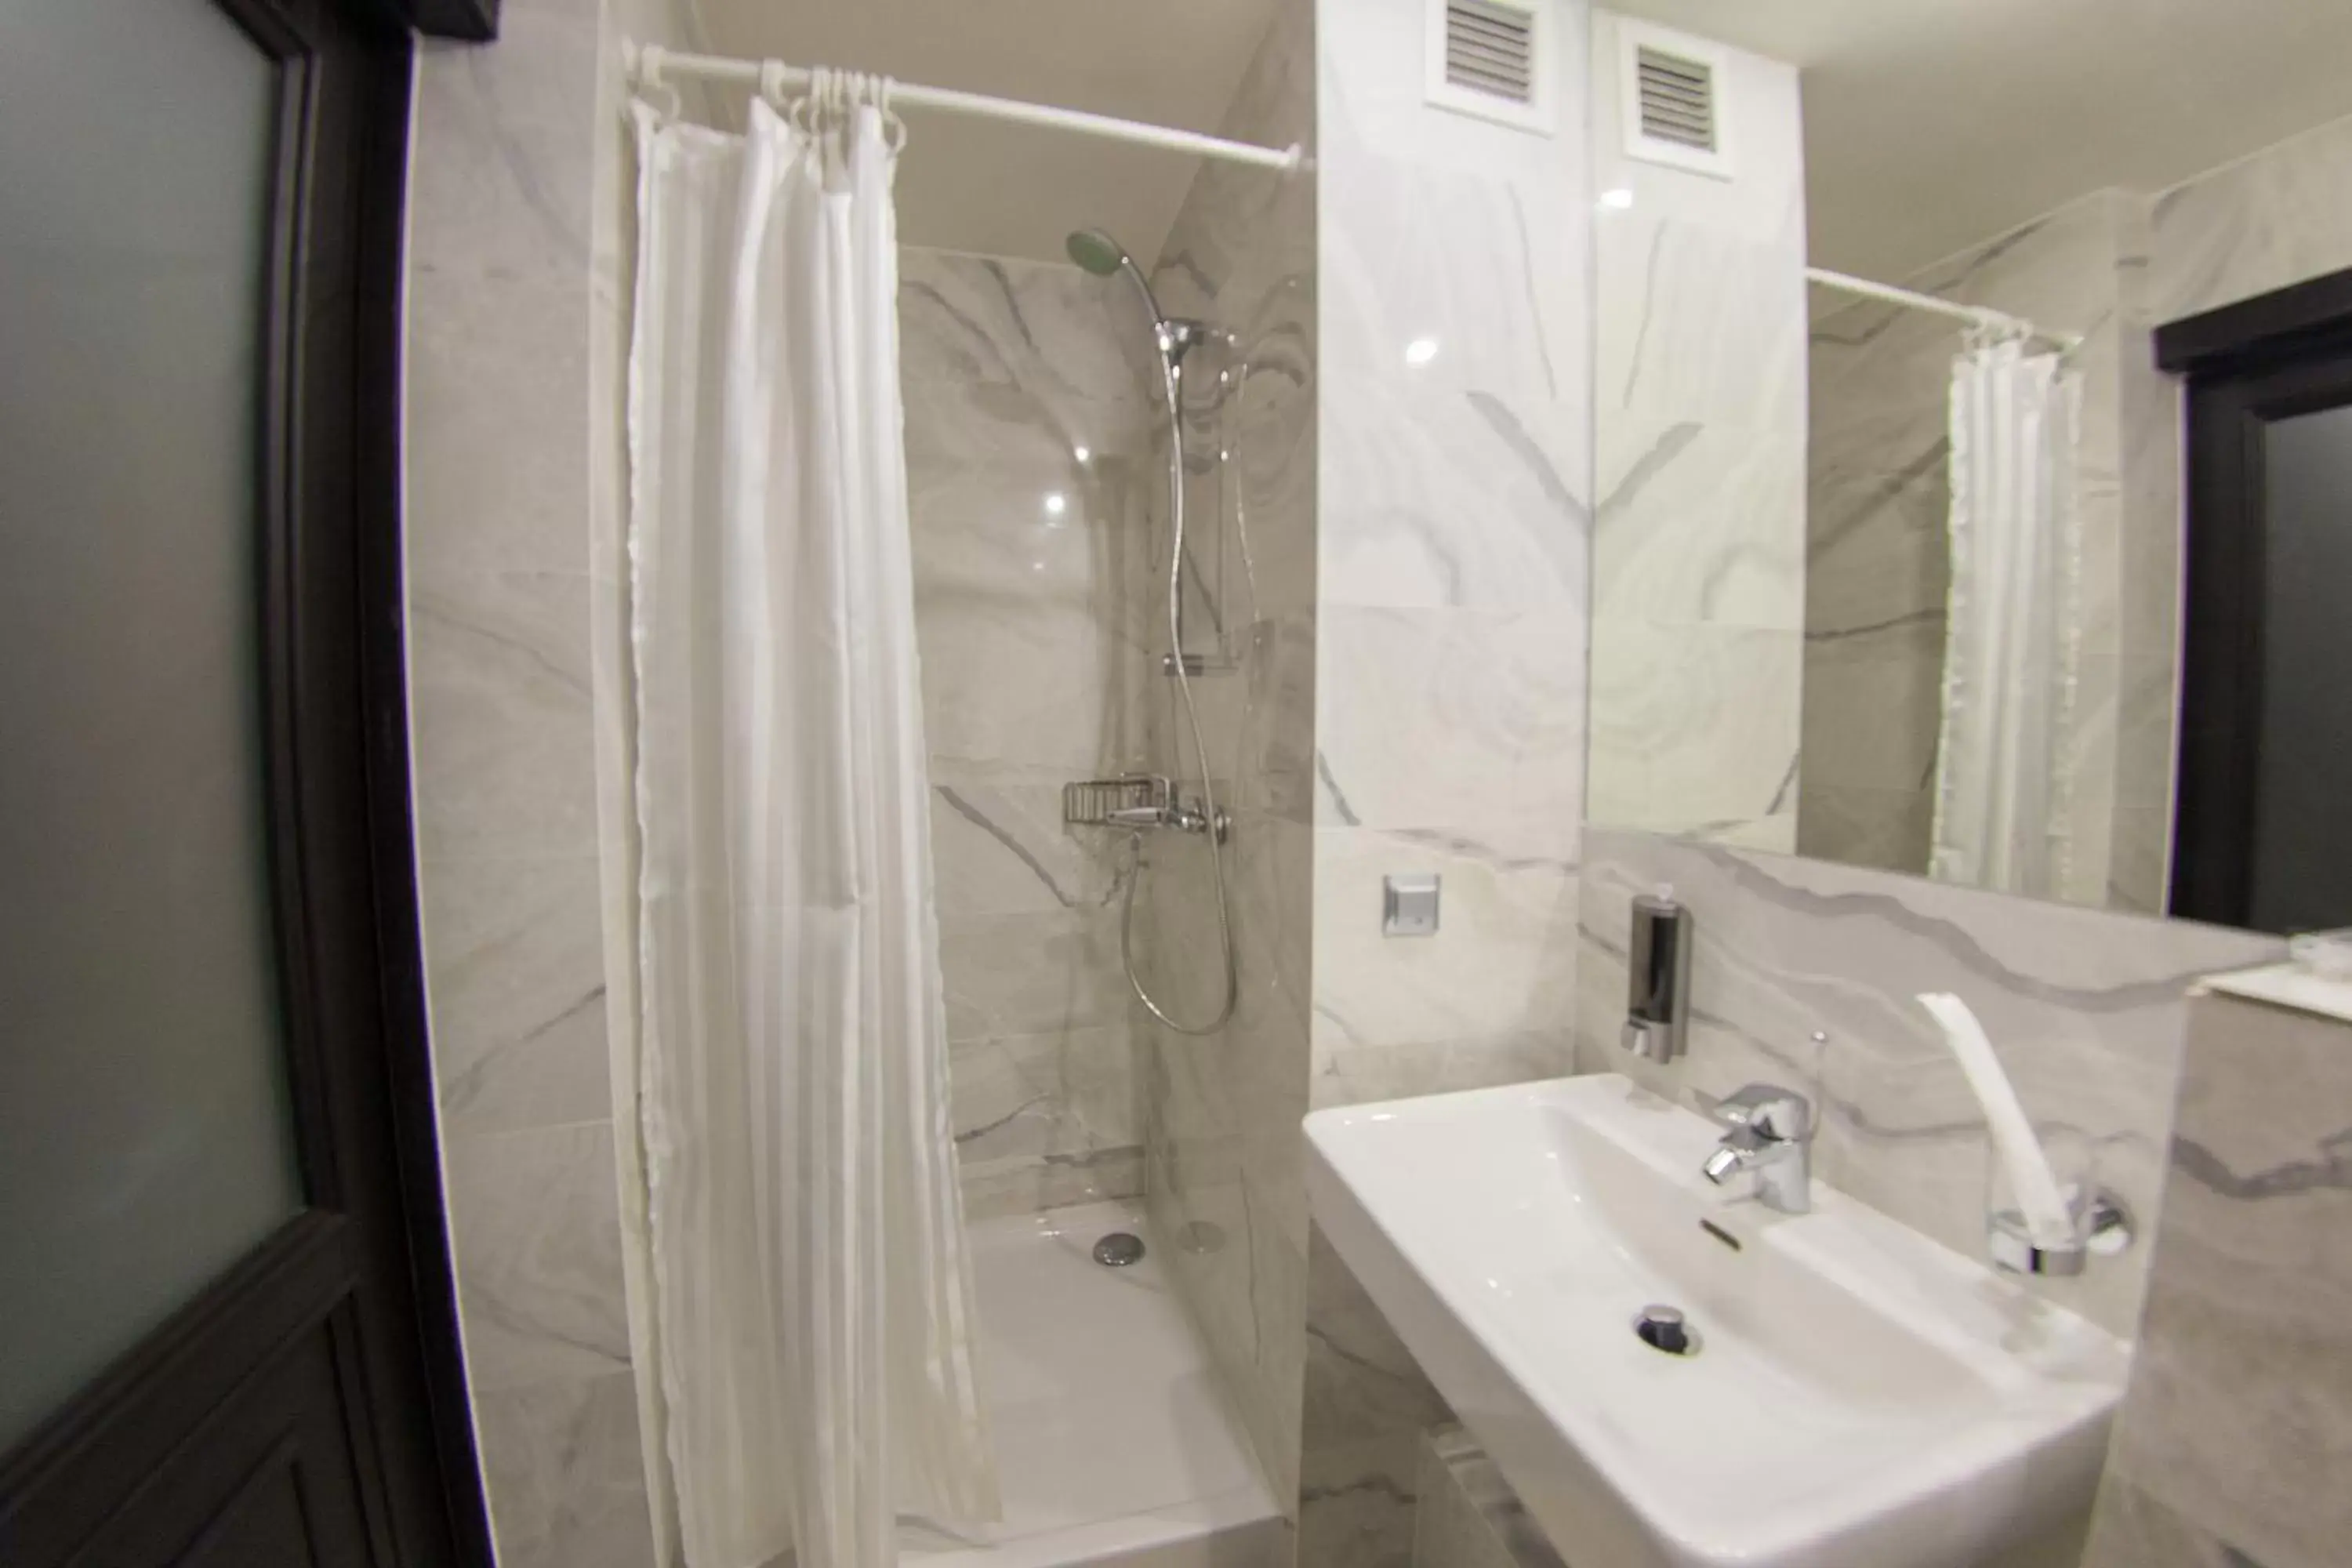 Bathroom in Best Western Plus Astana Hotel